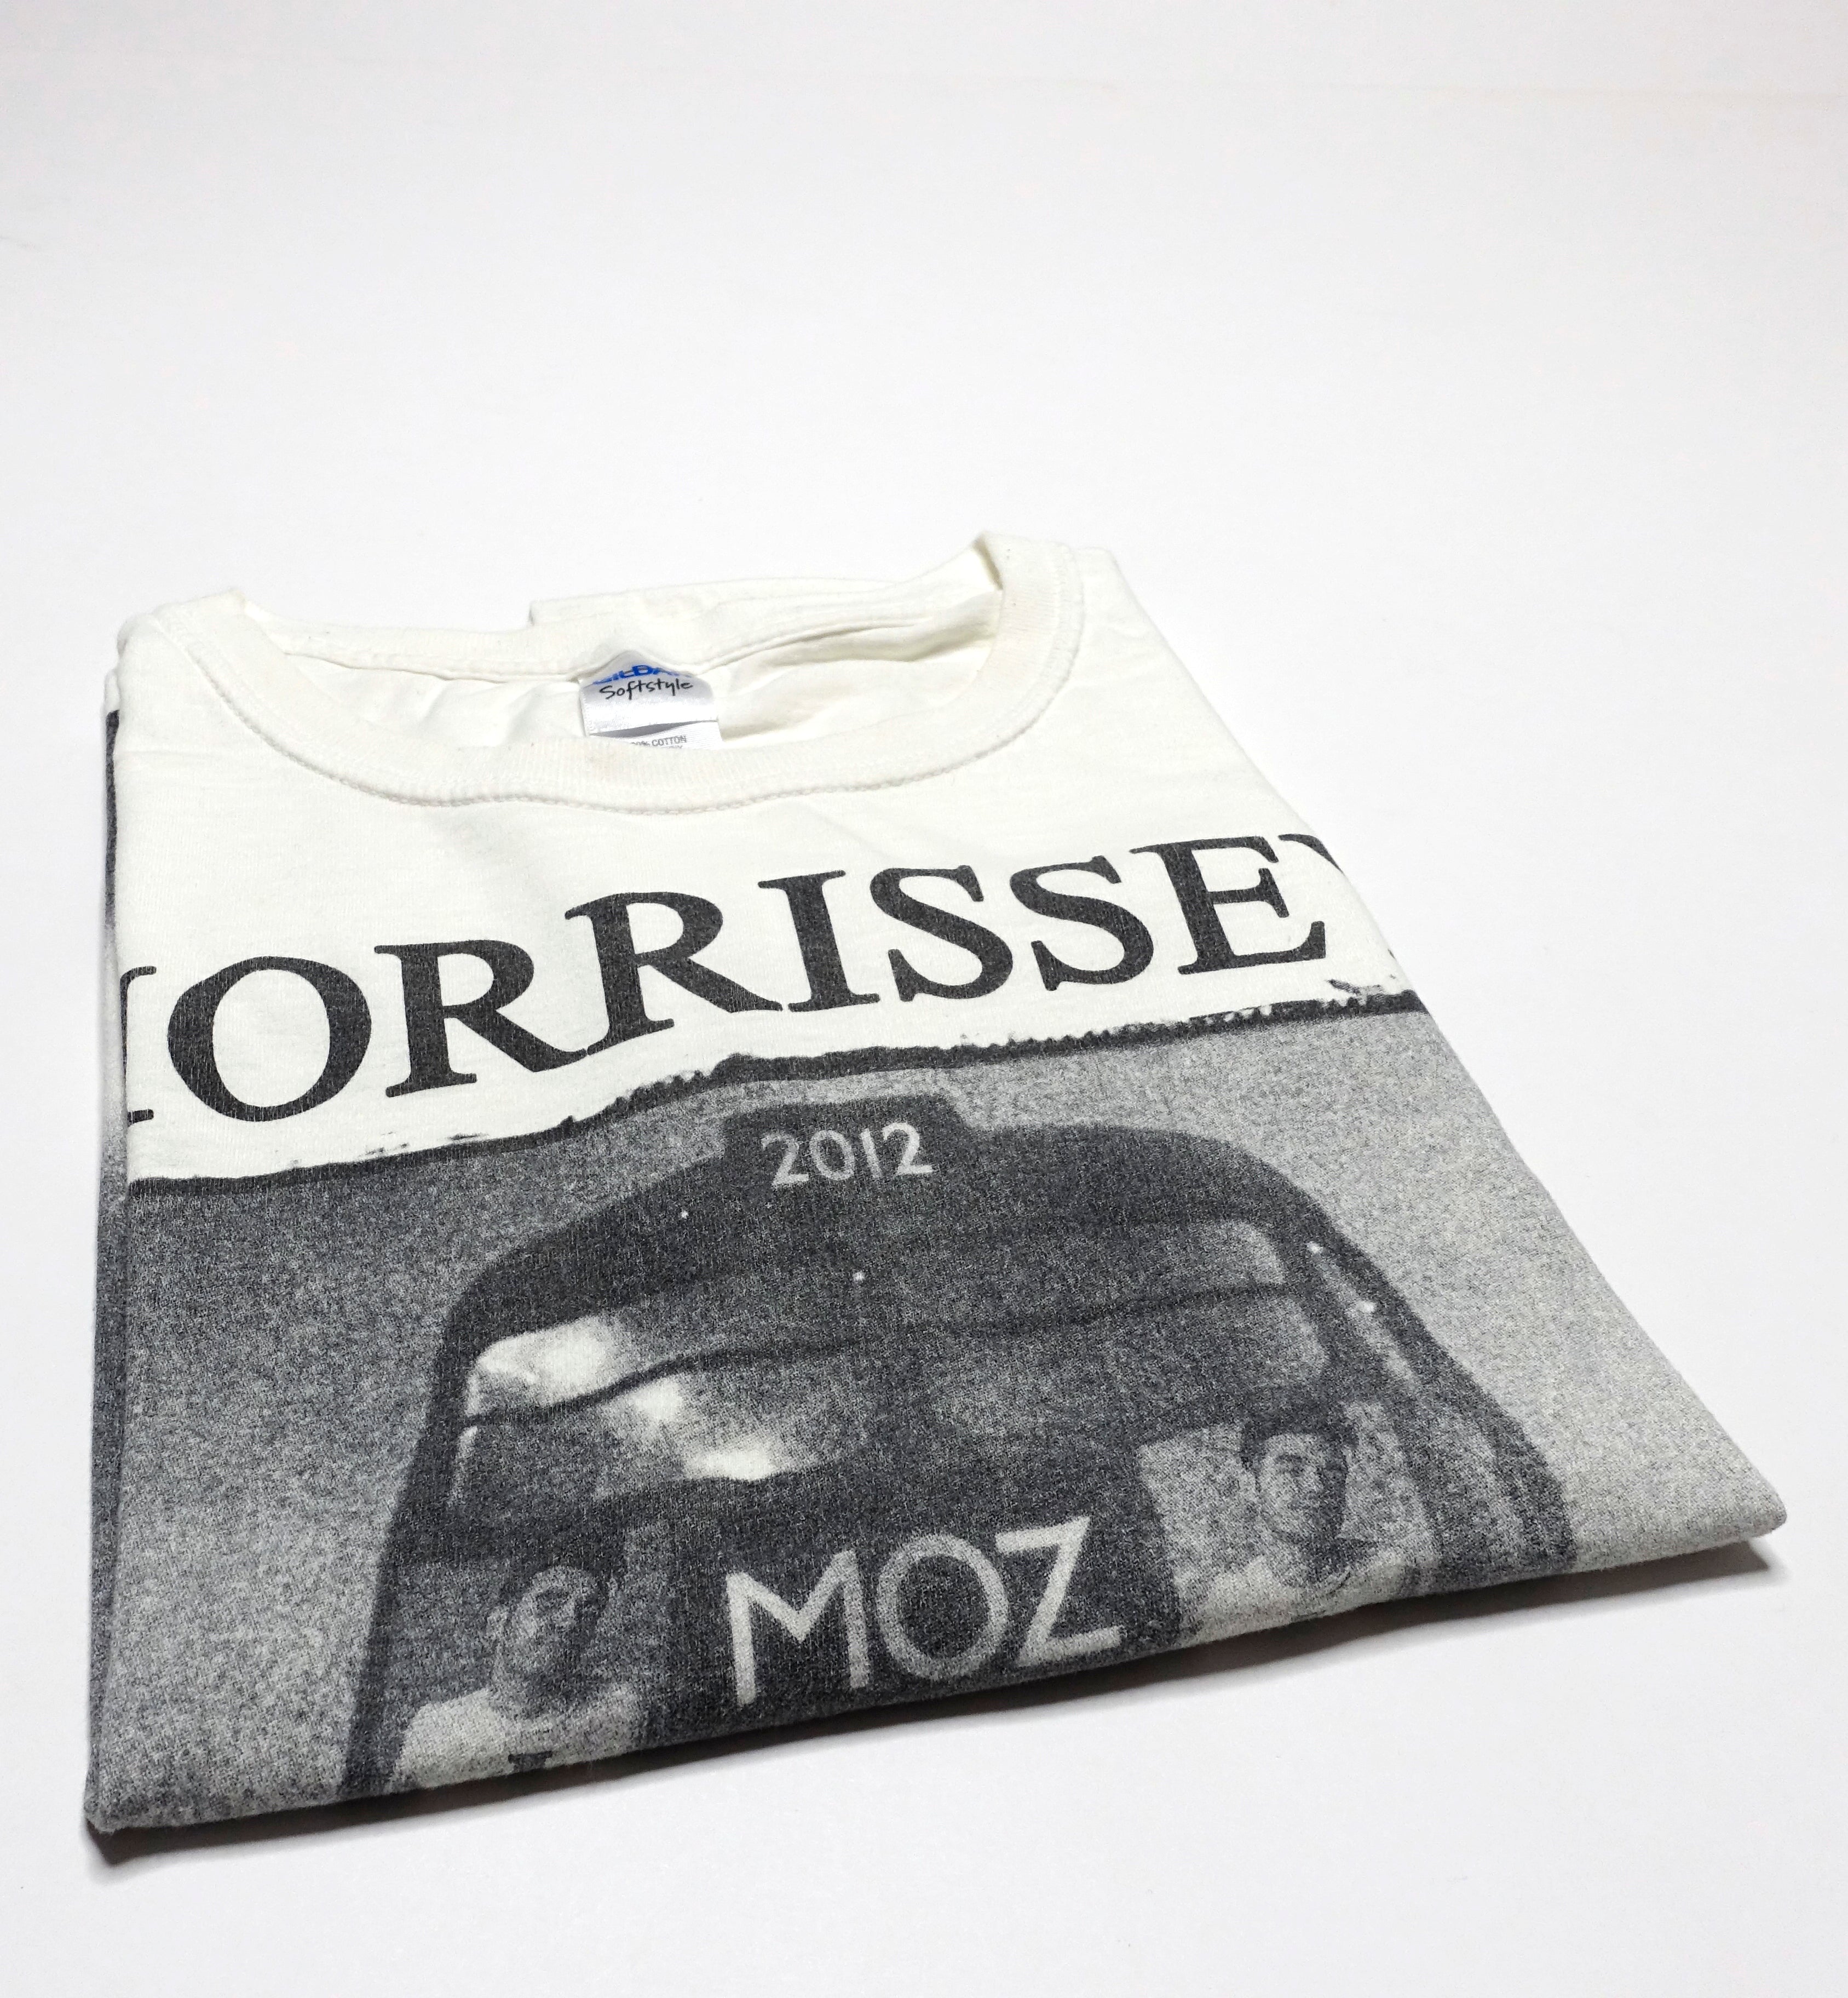 Morrissey - Double Decker Bus Tour Shirt Size Large